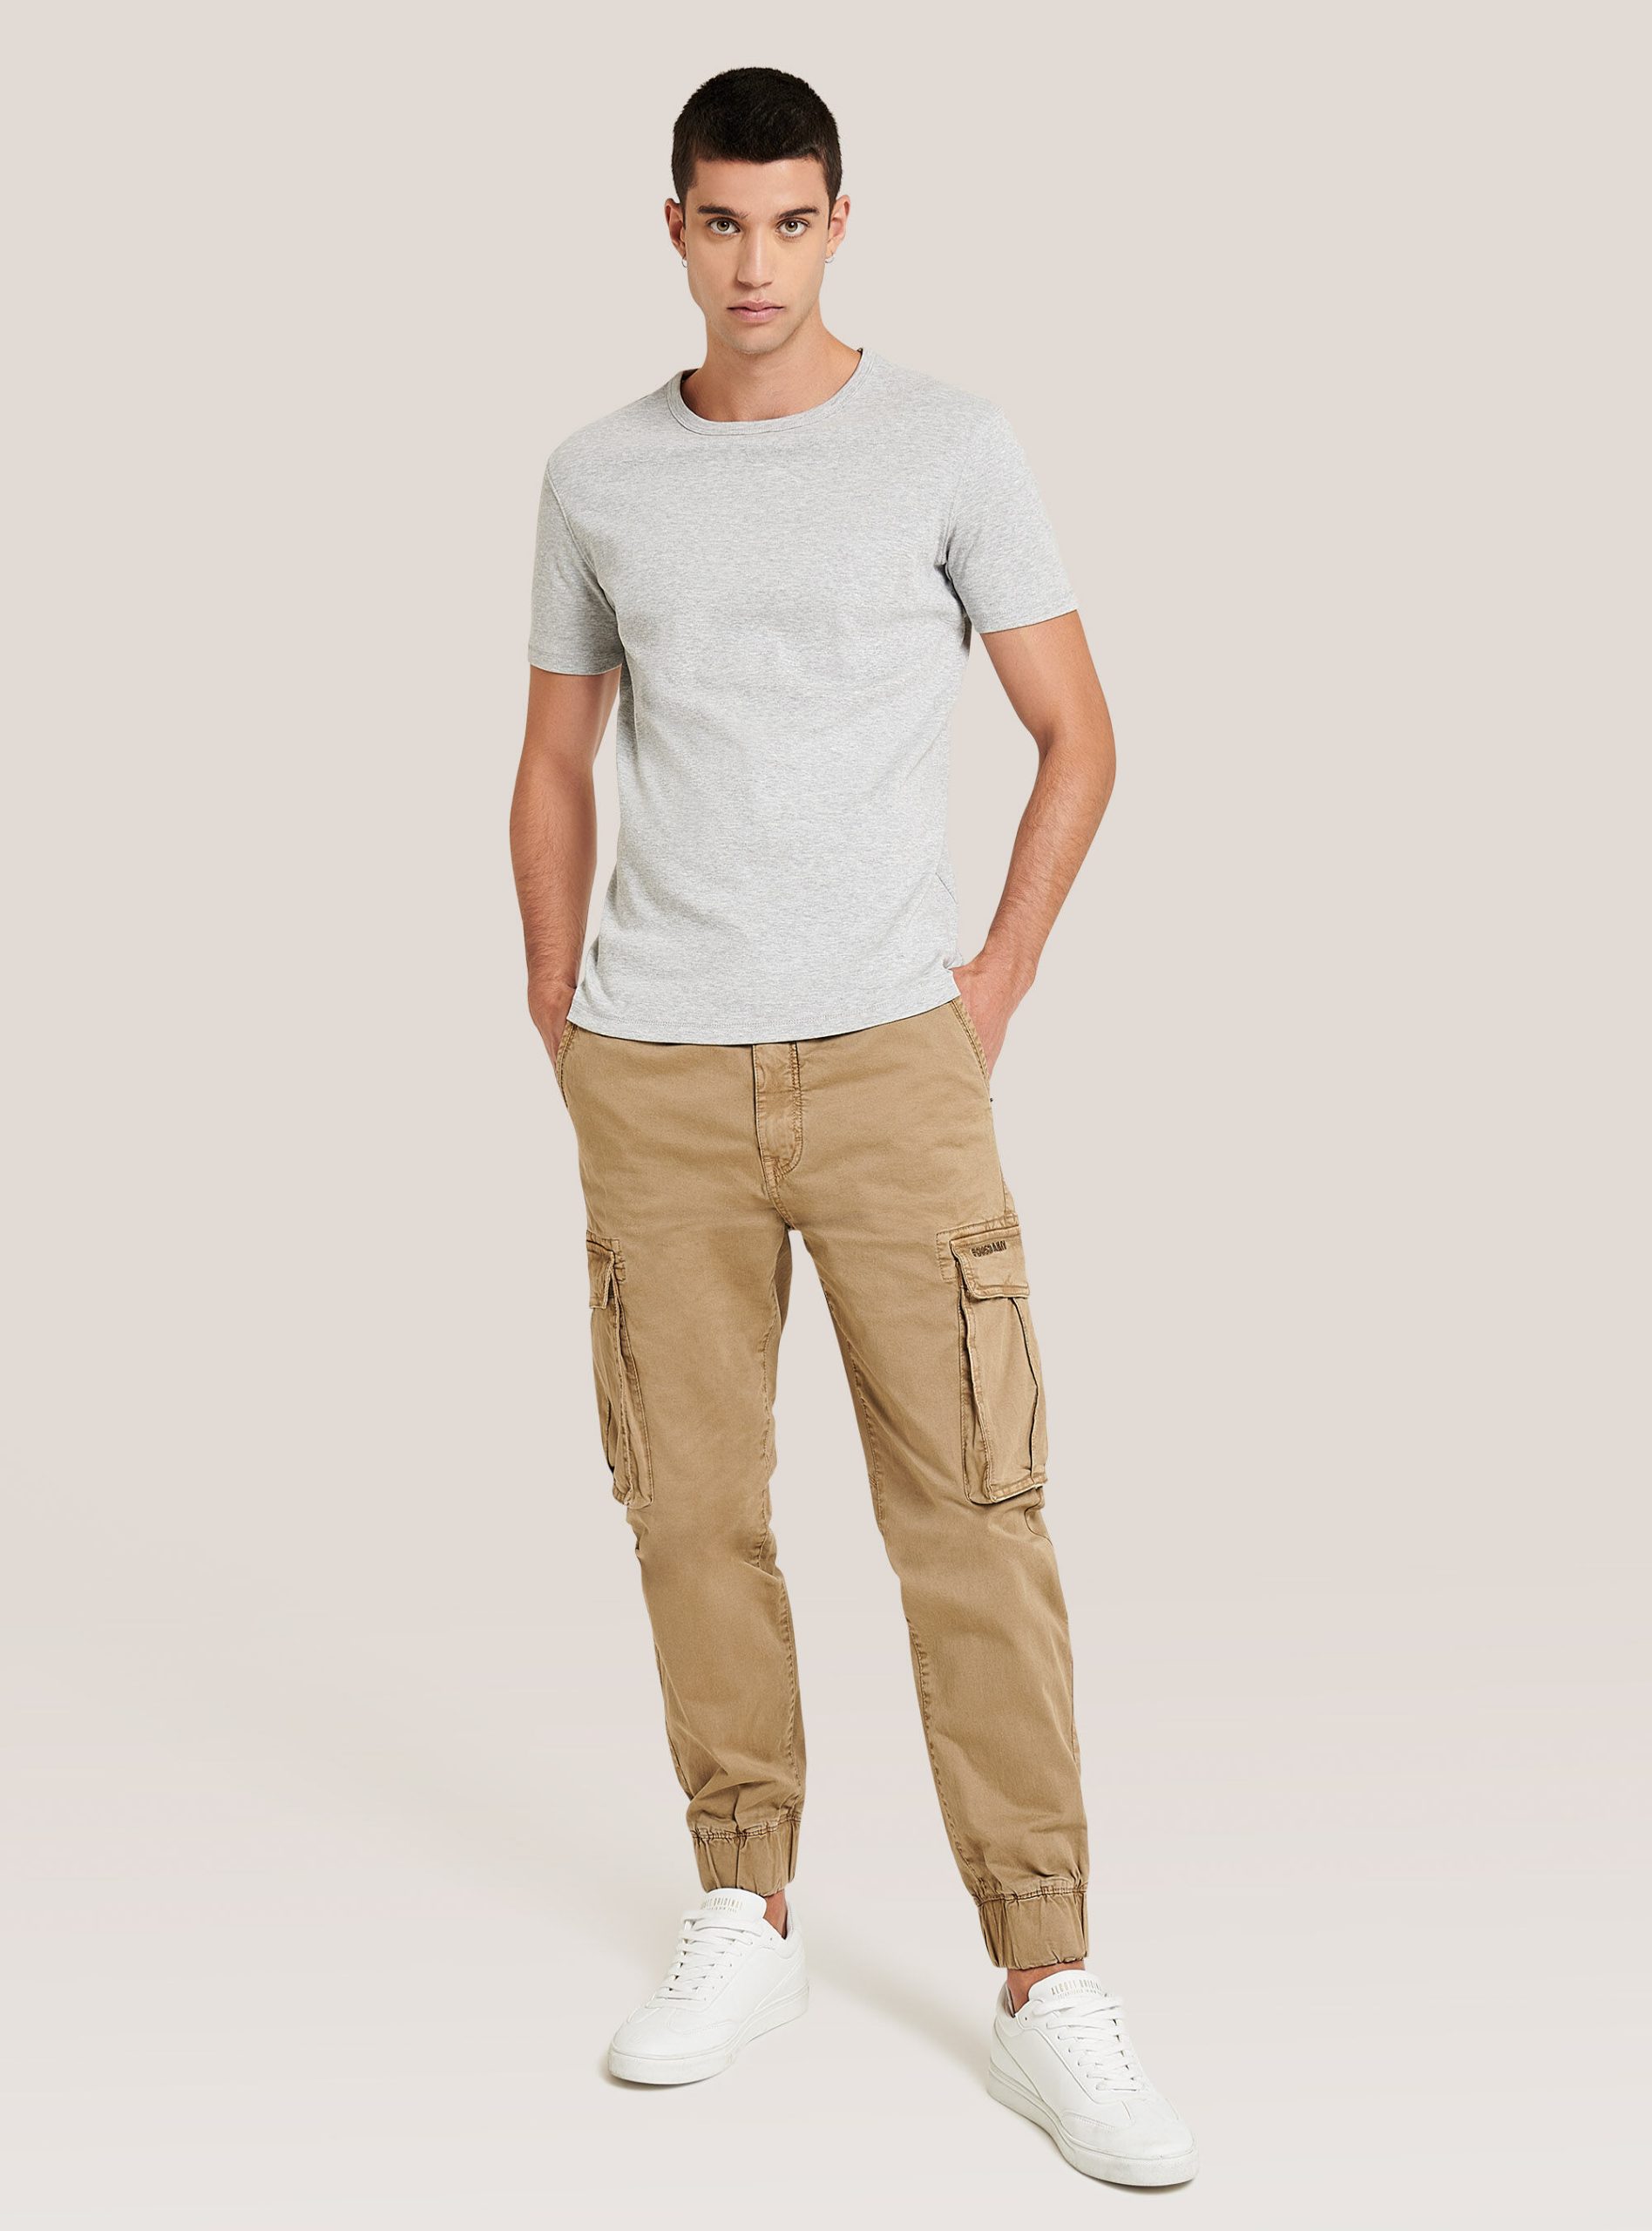 Einfarbiges Basic-T-Shirt Mit Rundhalsausschnitt Alcott T-Shirts C143 Light Grey M Männer Popularität – 2